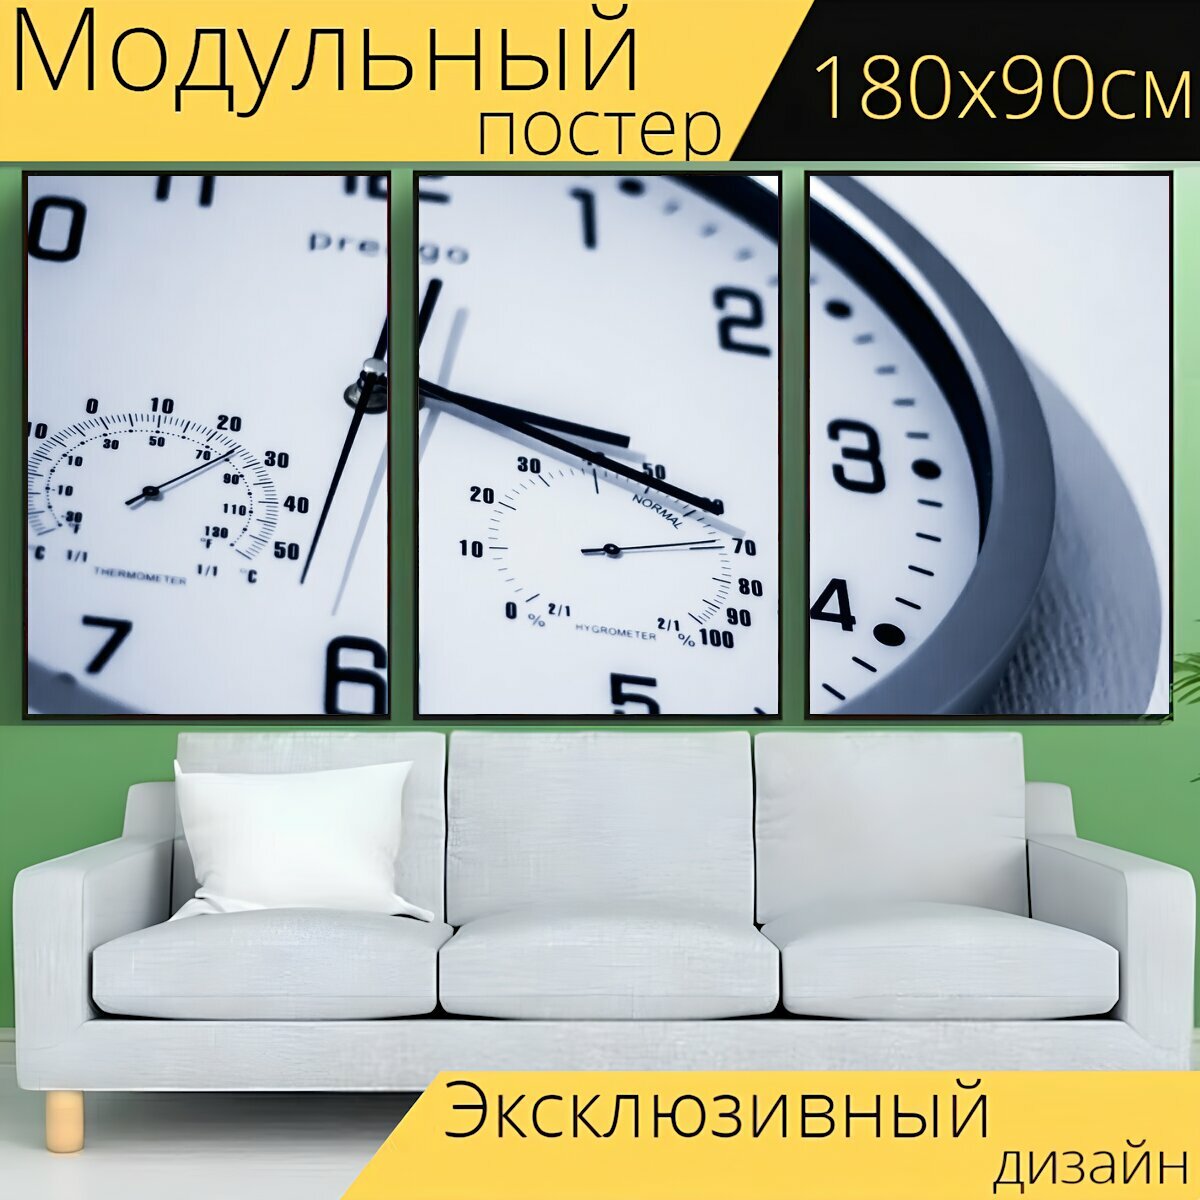 Модульный постер "Часы, время, секундомер" 180 x 90 см. для интерьера